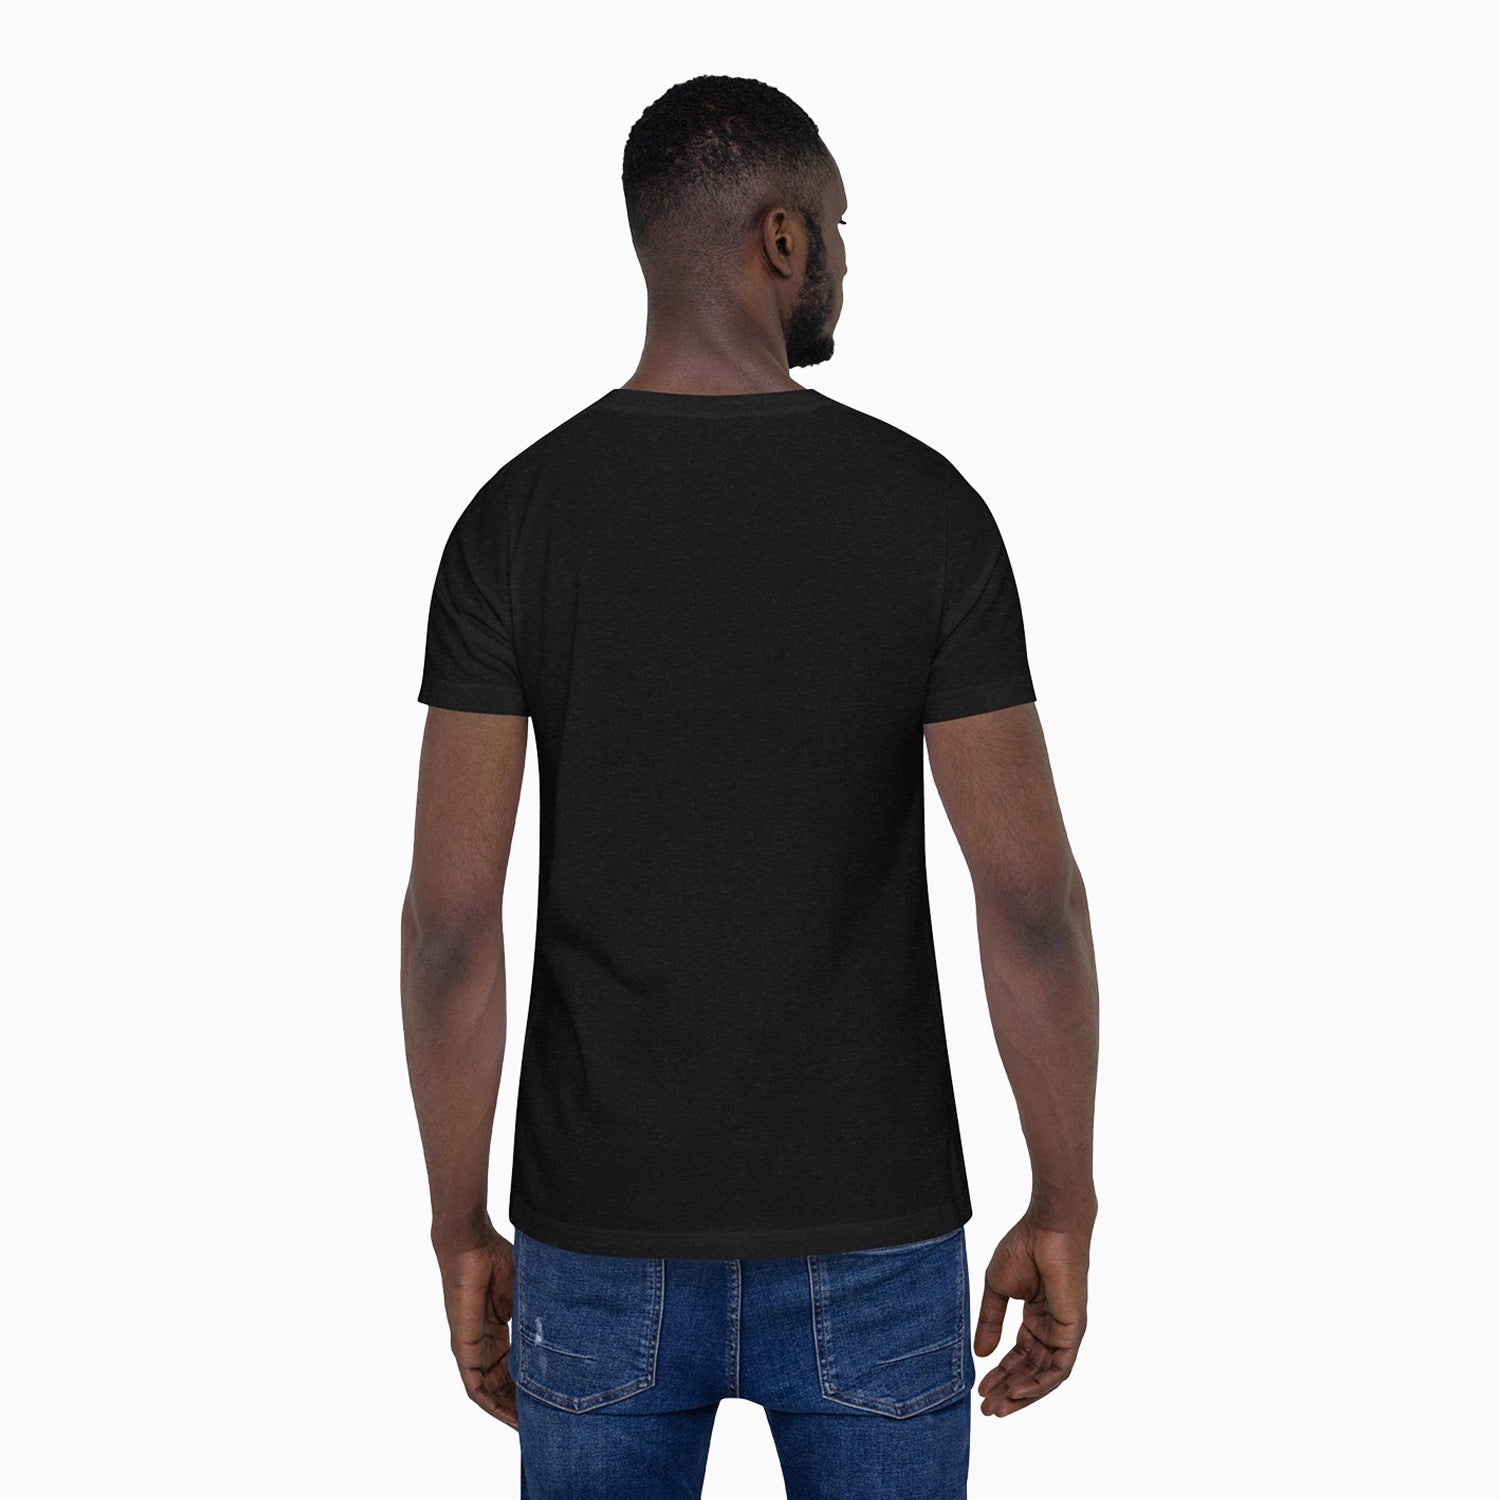 savar-mens-black-rules-printed-black-t-shirt-st225-010